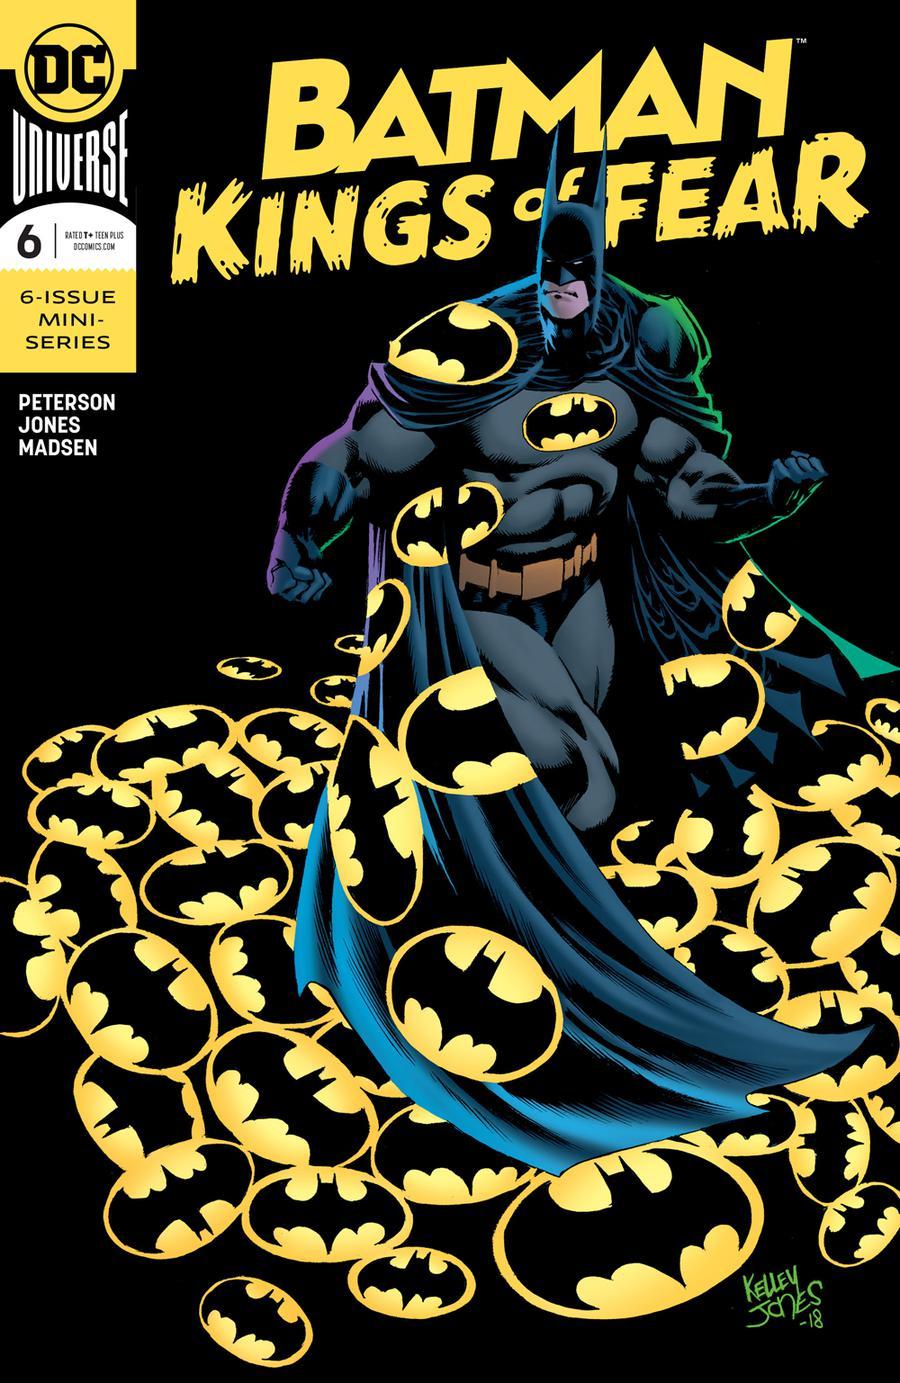 Batman Kings Of Fear Vol. 1 #6